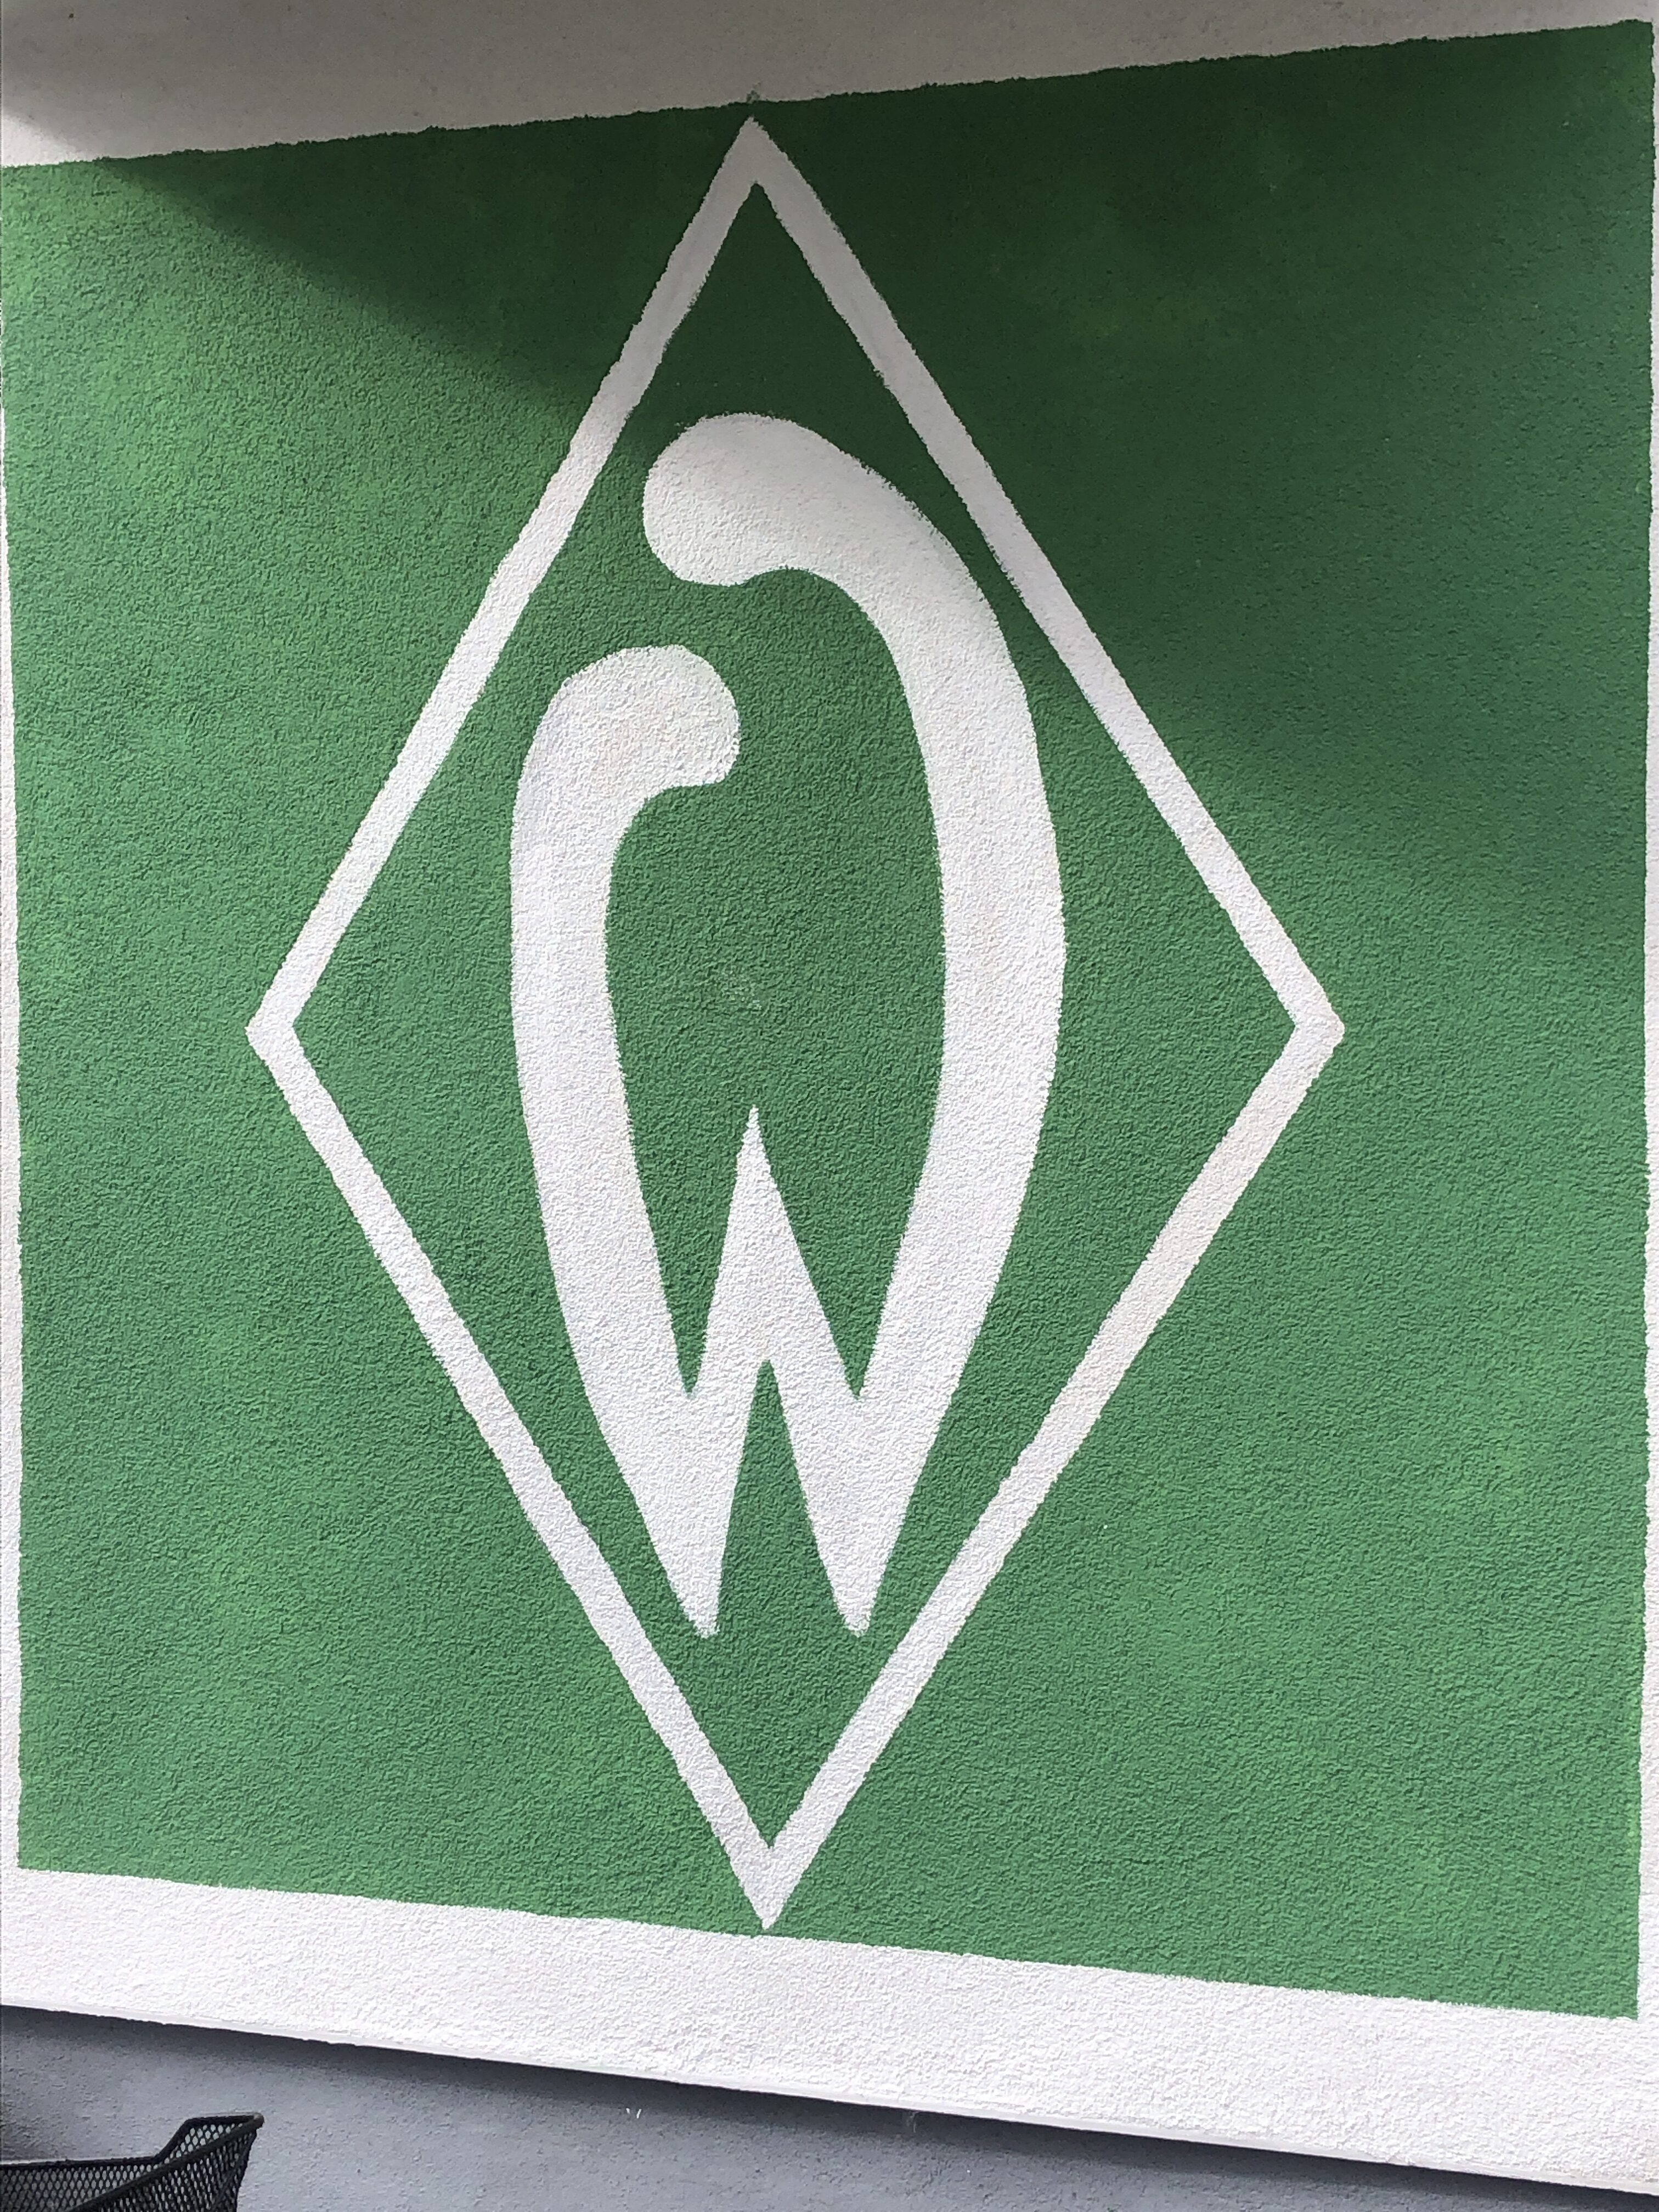 Werder Bremen, Jens Stage, Niclas Füllkrug